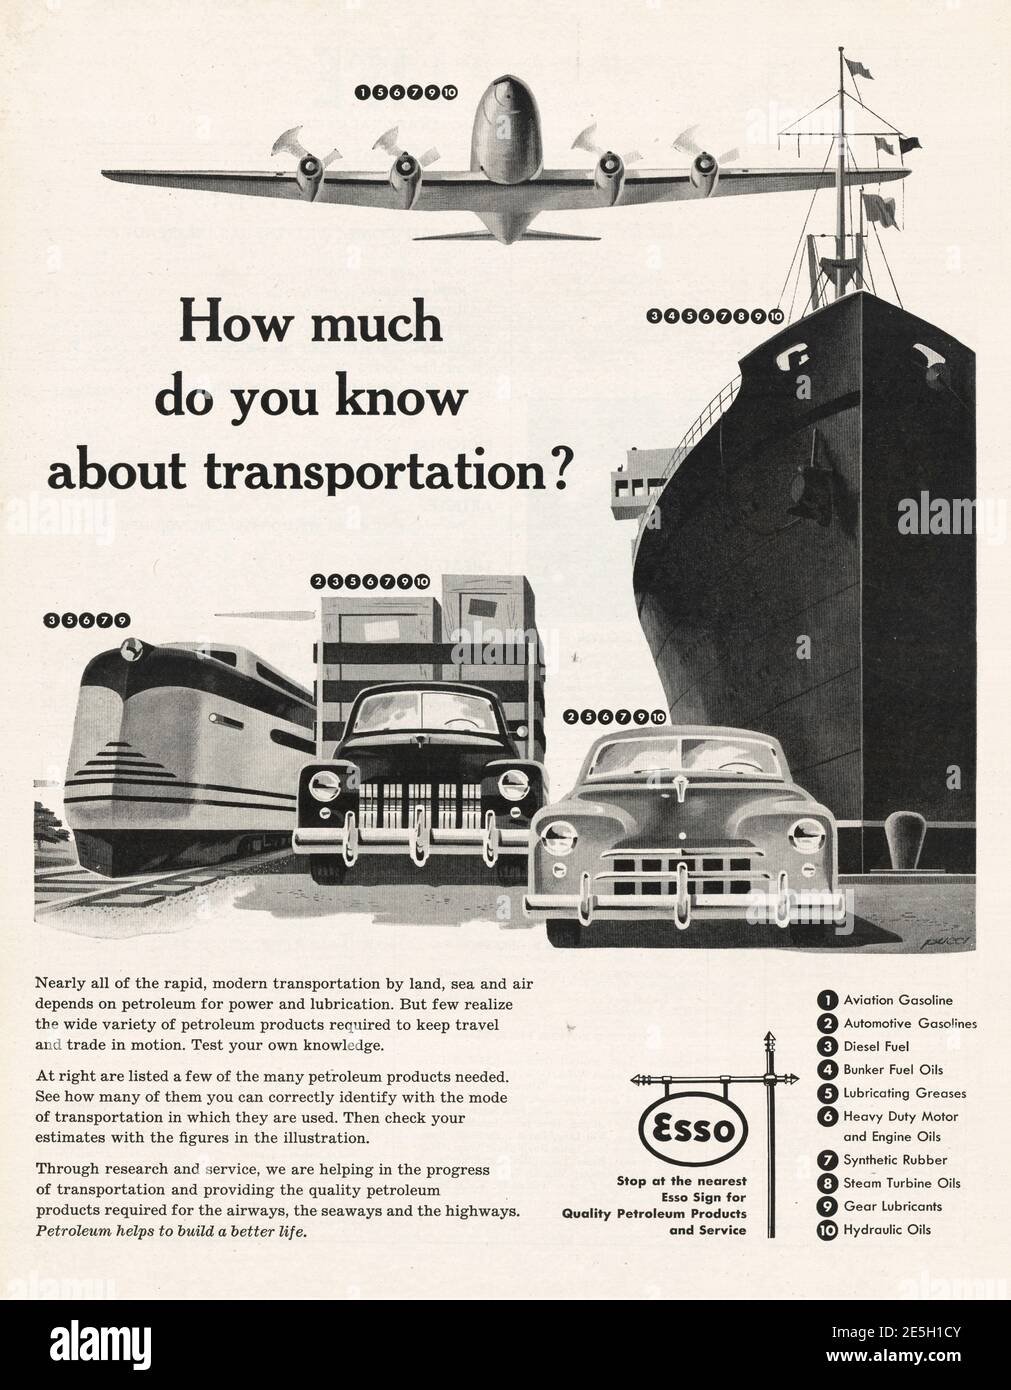 Esso 1954 Esso Original advert No.1 